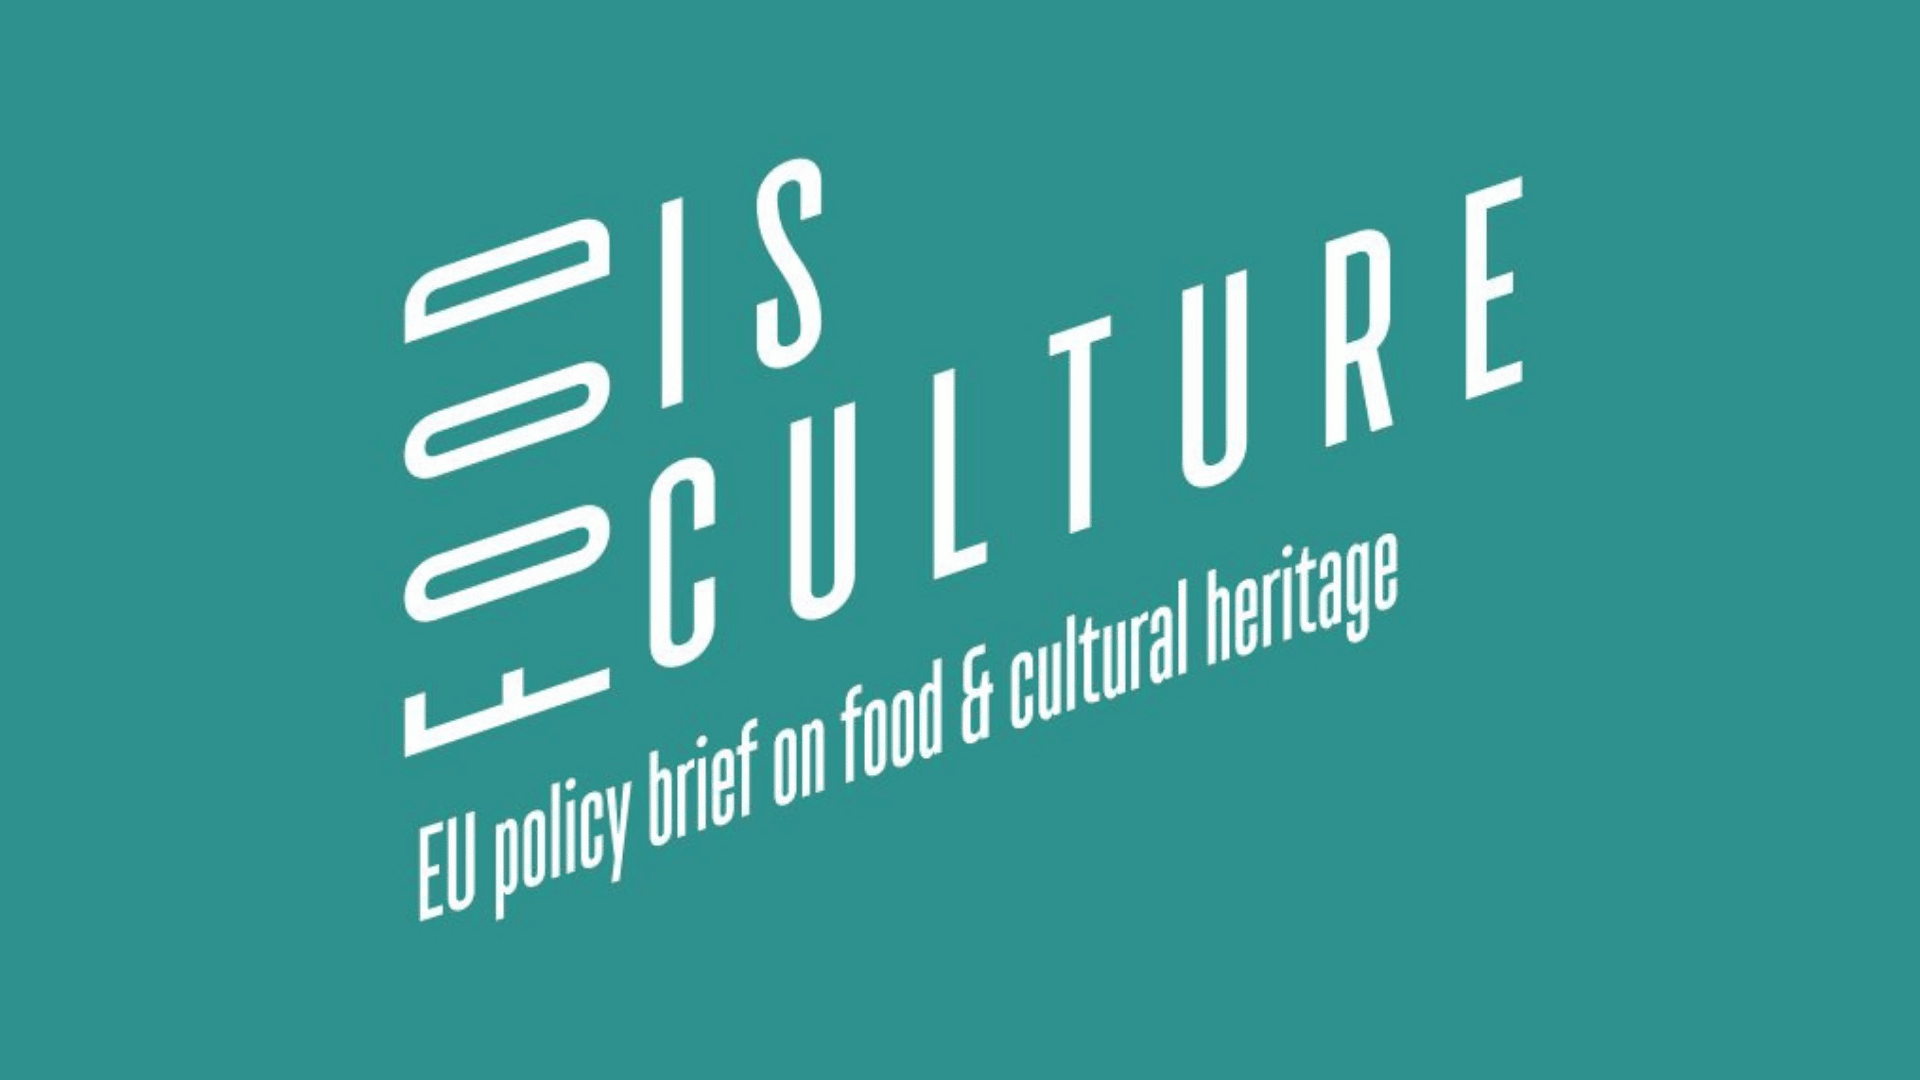 Gemeinsame Kurzdarstellung zu Ernährung und kulturellem Erbe